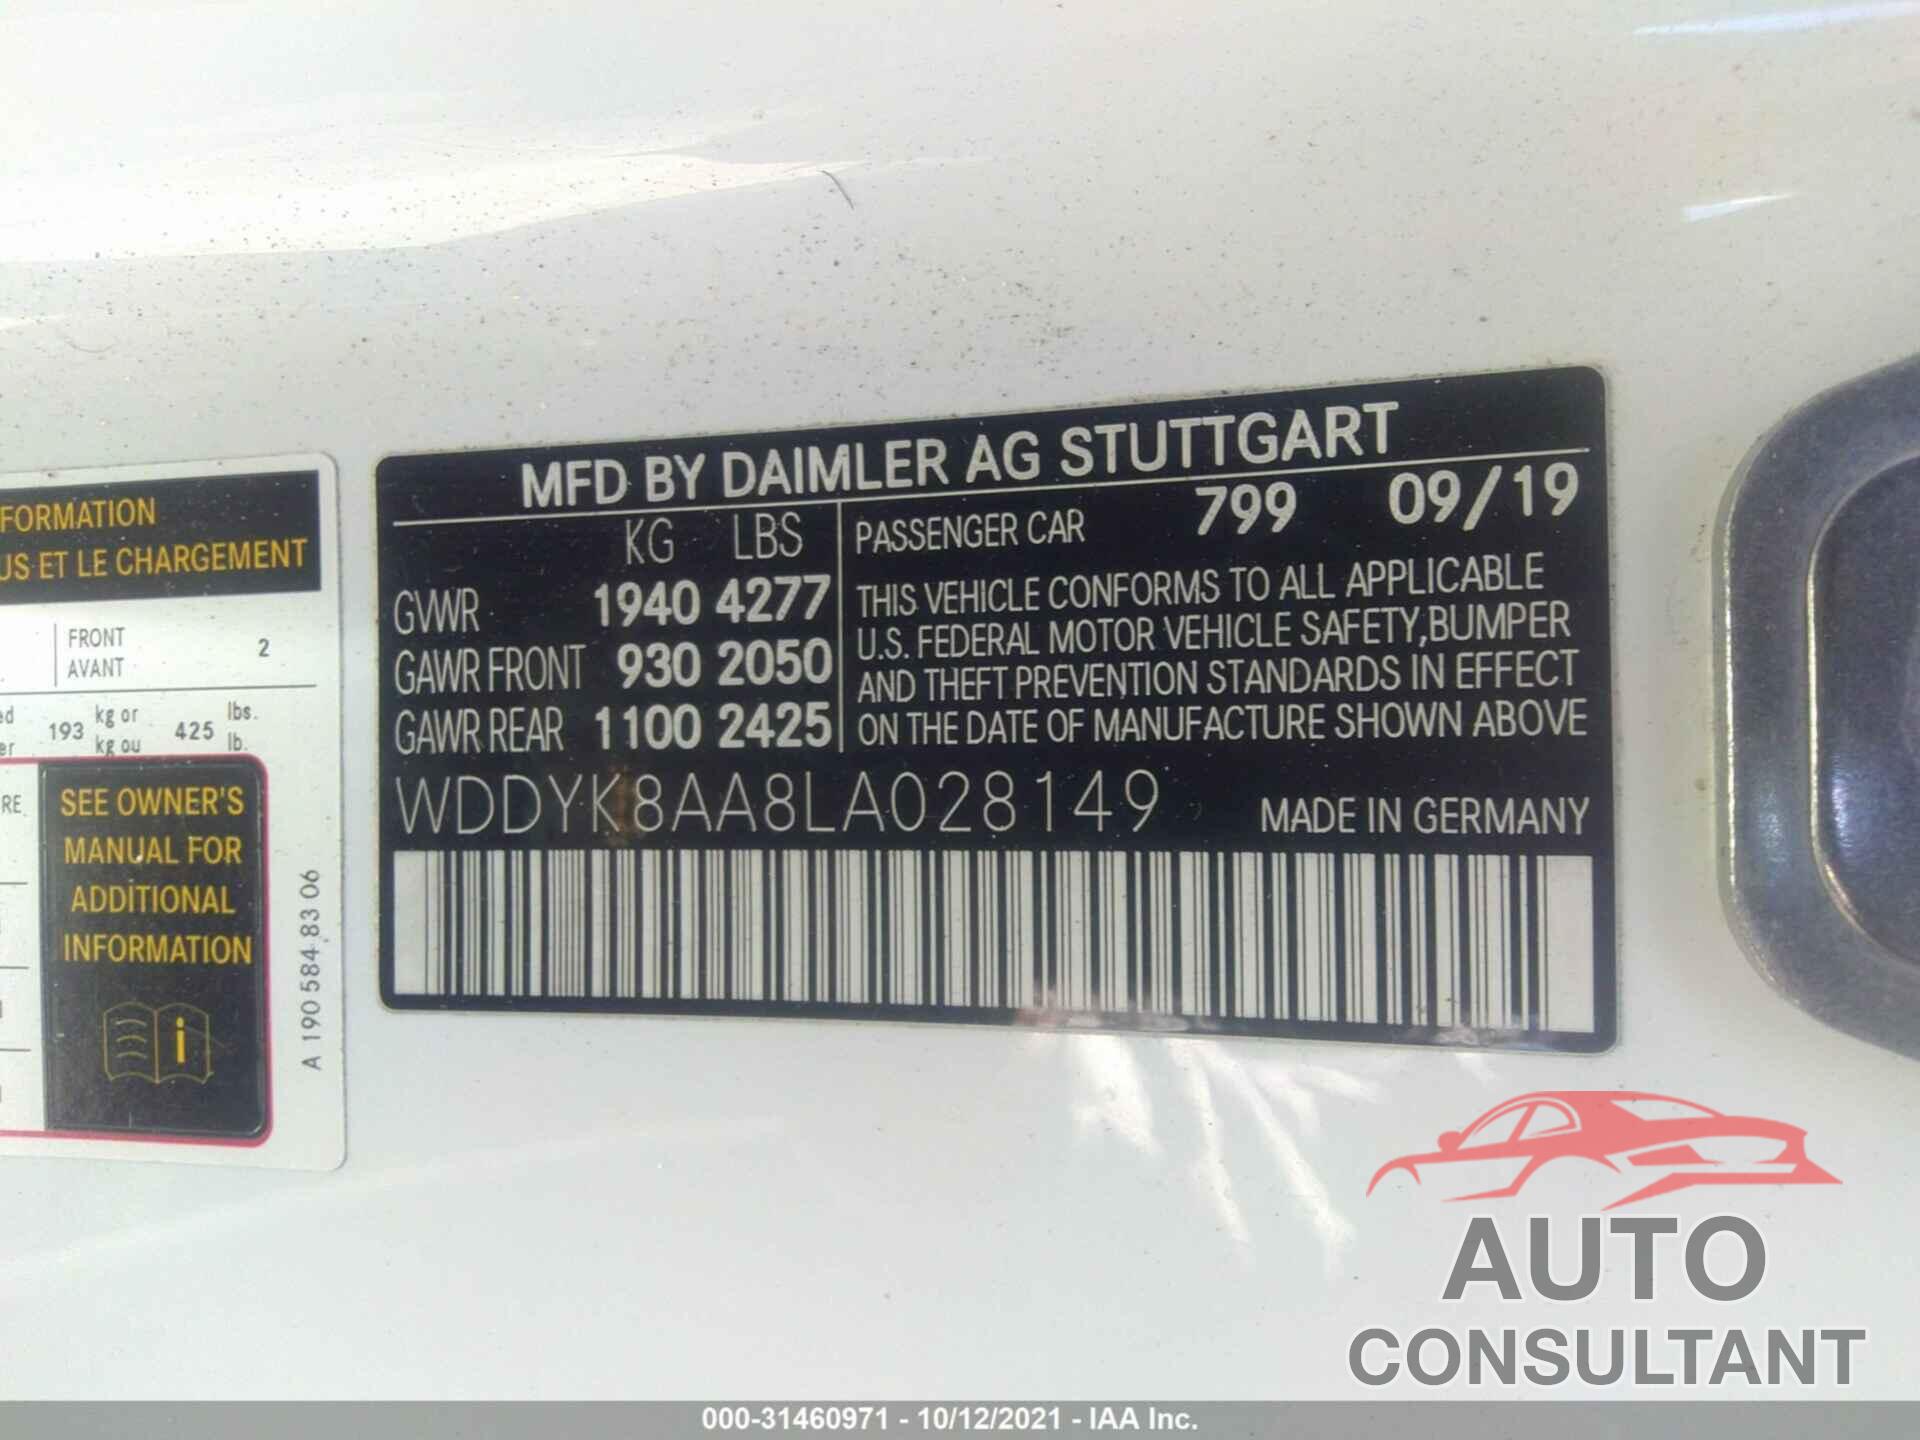 MERCEDES-BENZ AMG GT 2020 - WDDYK8AA8LA028149